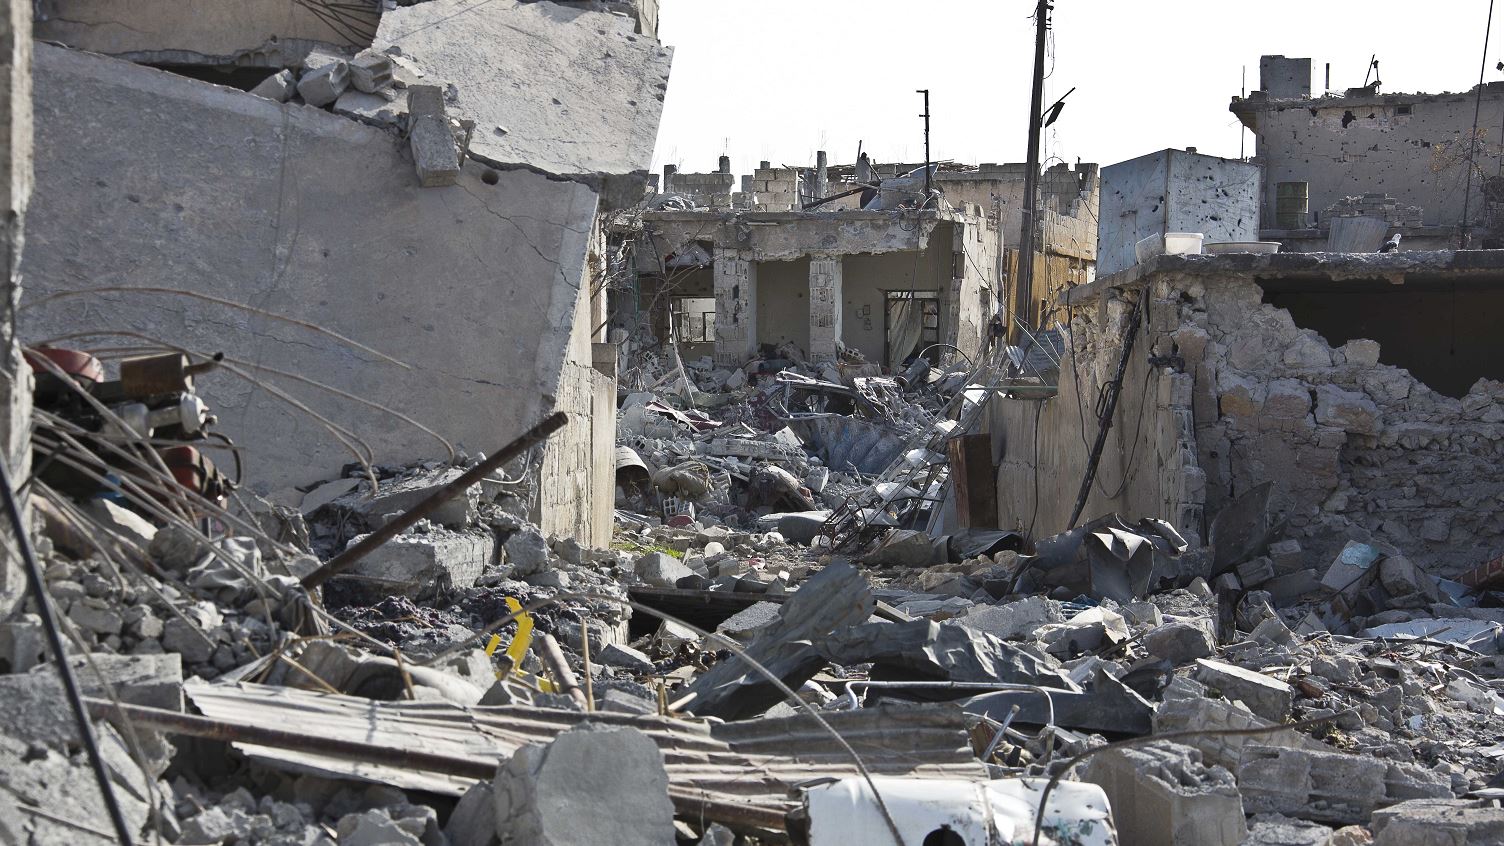 Destrucción en Siria tras combates con el Estado Islamico (Ap, 2014)